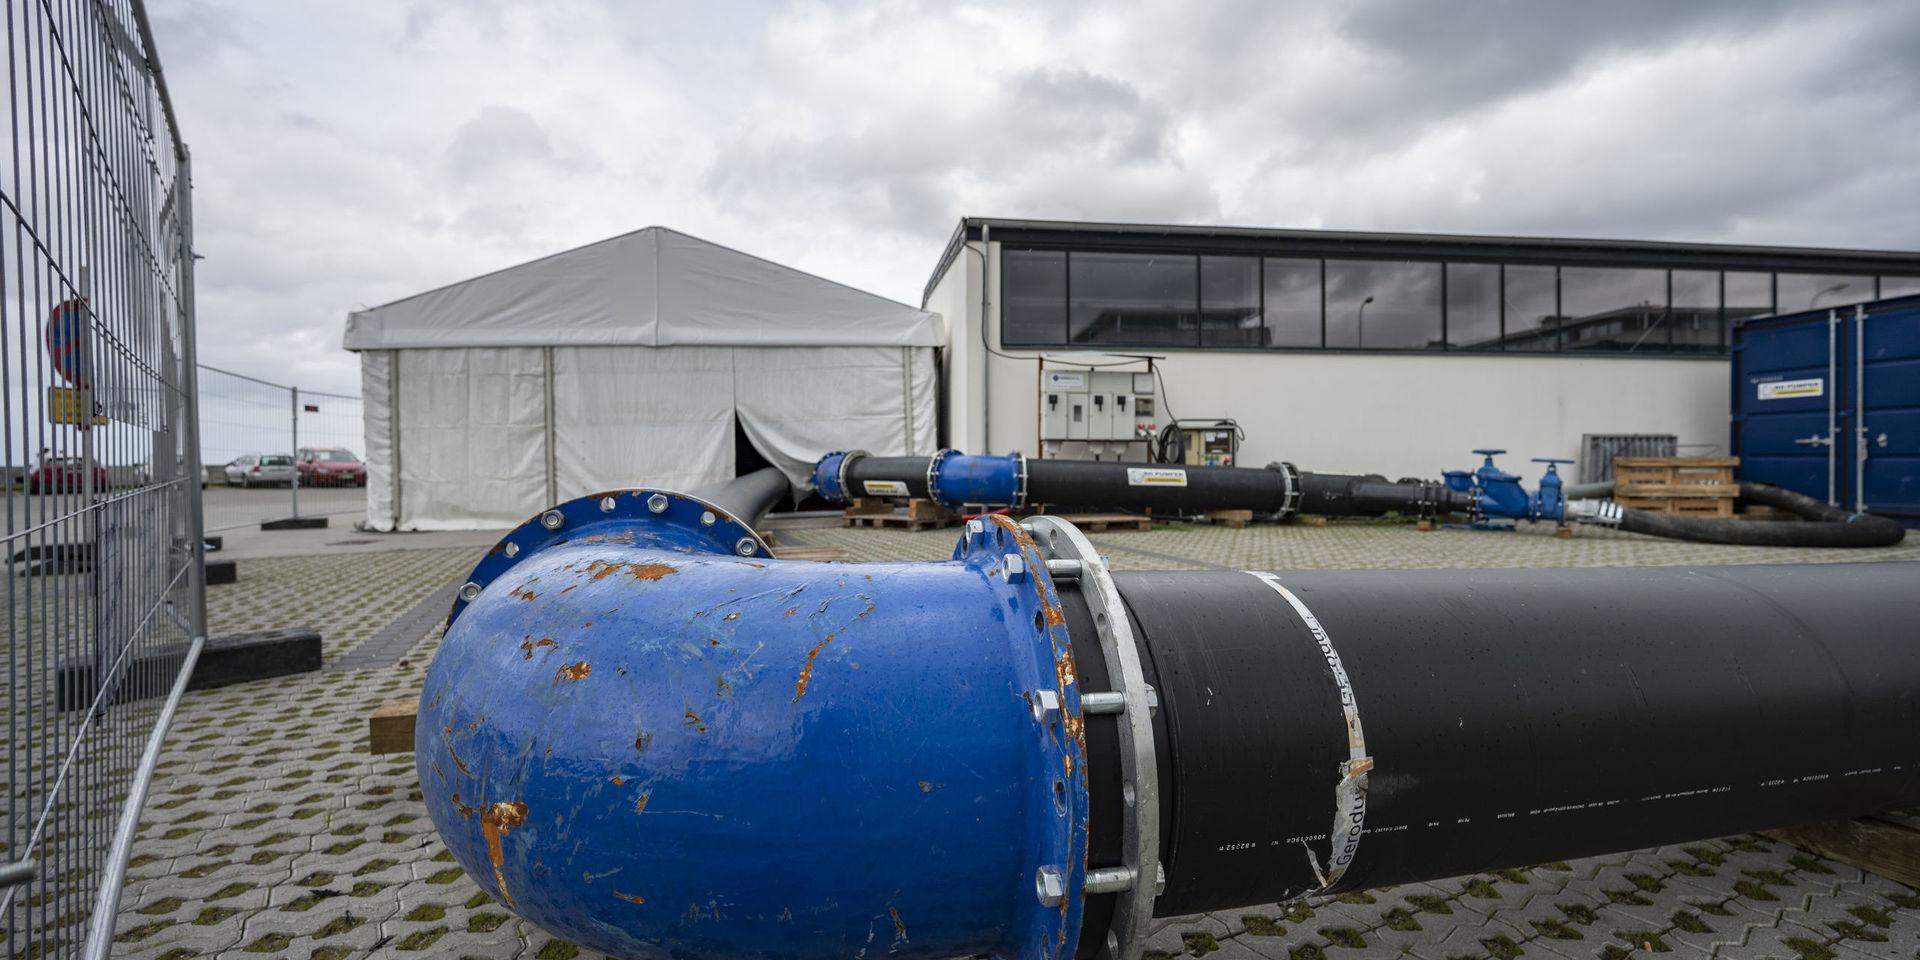 Avloppsrör vid pumpstationen i hamnen i Skovshoved norr om Köpenhamn. Härifrån var det tänkt att 290 000 kubikmeter avloppsvatten skulle pumpats ut i Öresund. Nu avslöjar TV2 Lorry att betydligt större mängder orenat avloppsvatten har släppts ut i Öresund de senaste åren. 